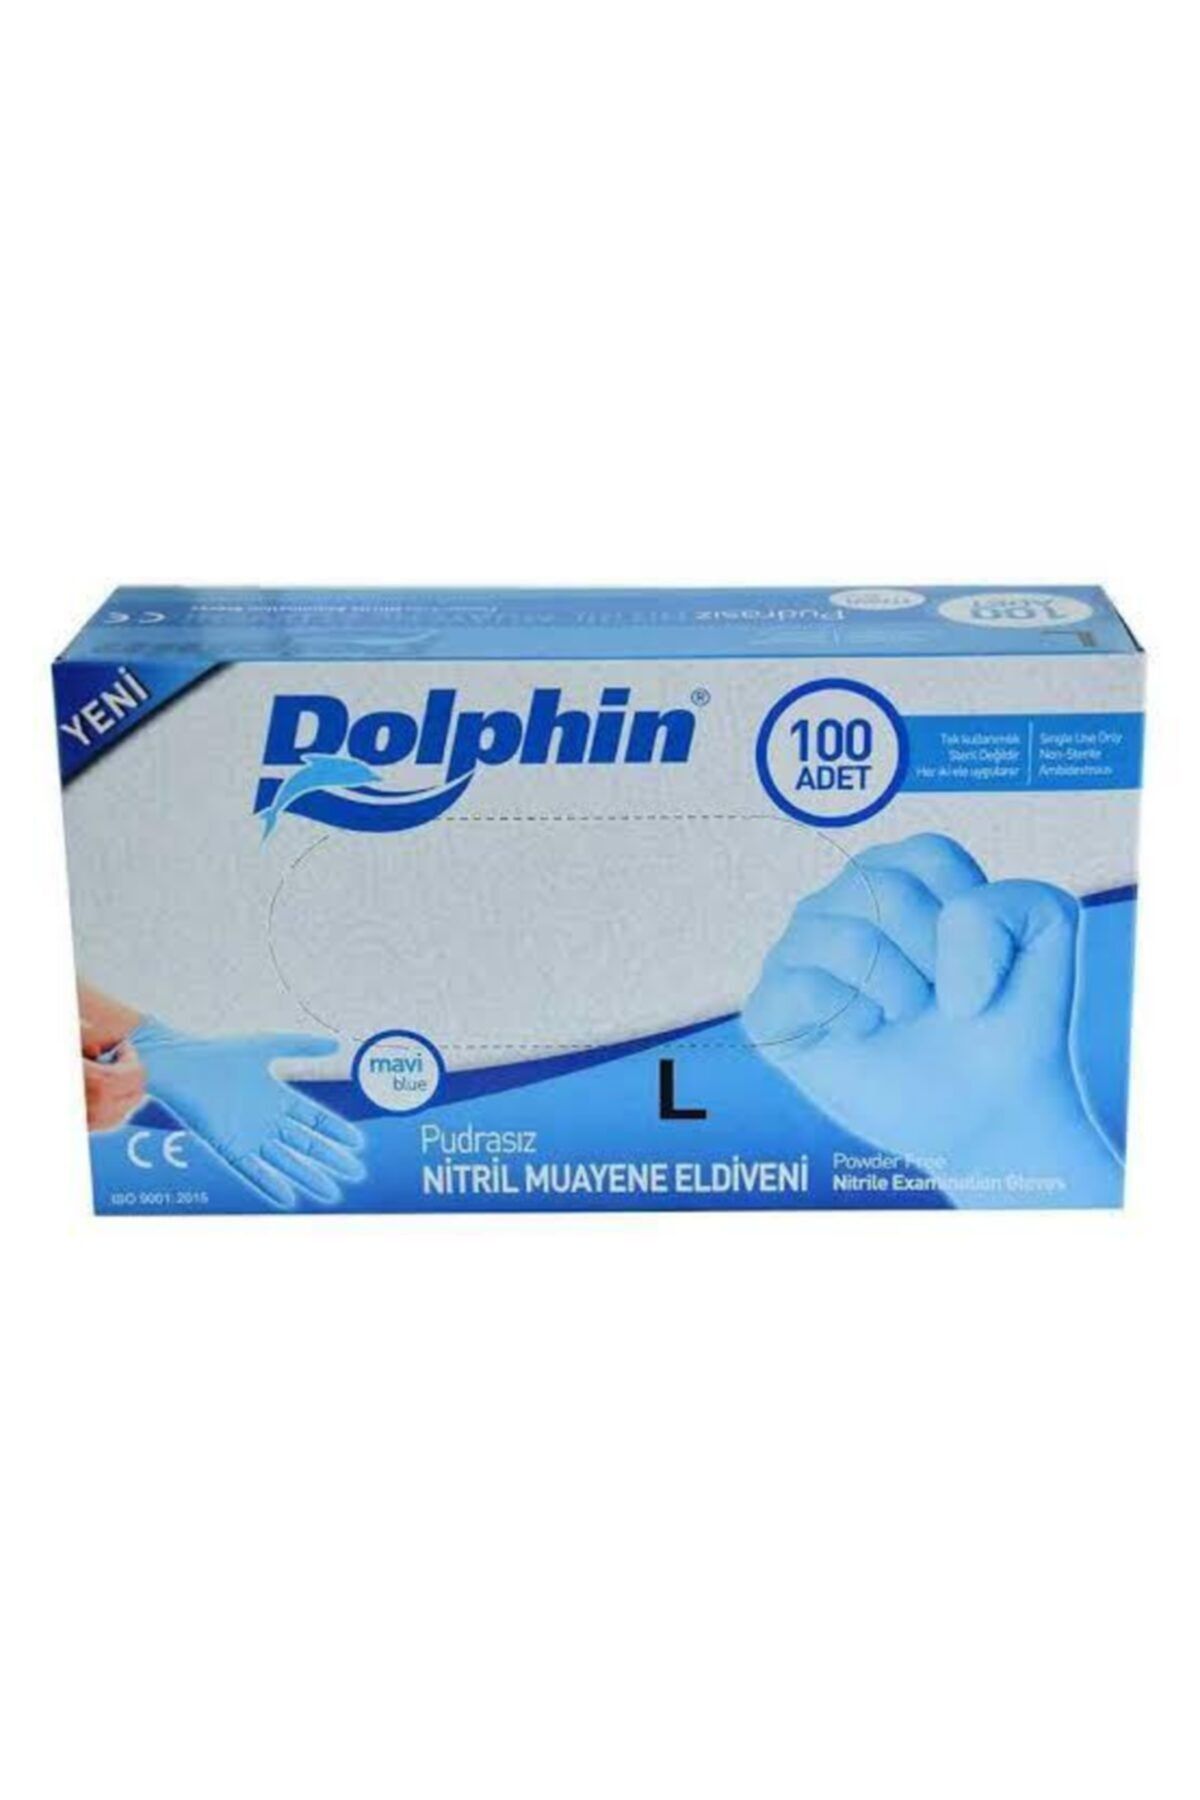 Dolphin Dolphın Mavi Pudrasız Large Eldiven